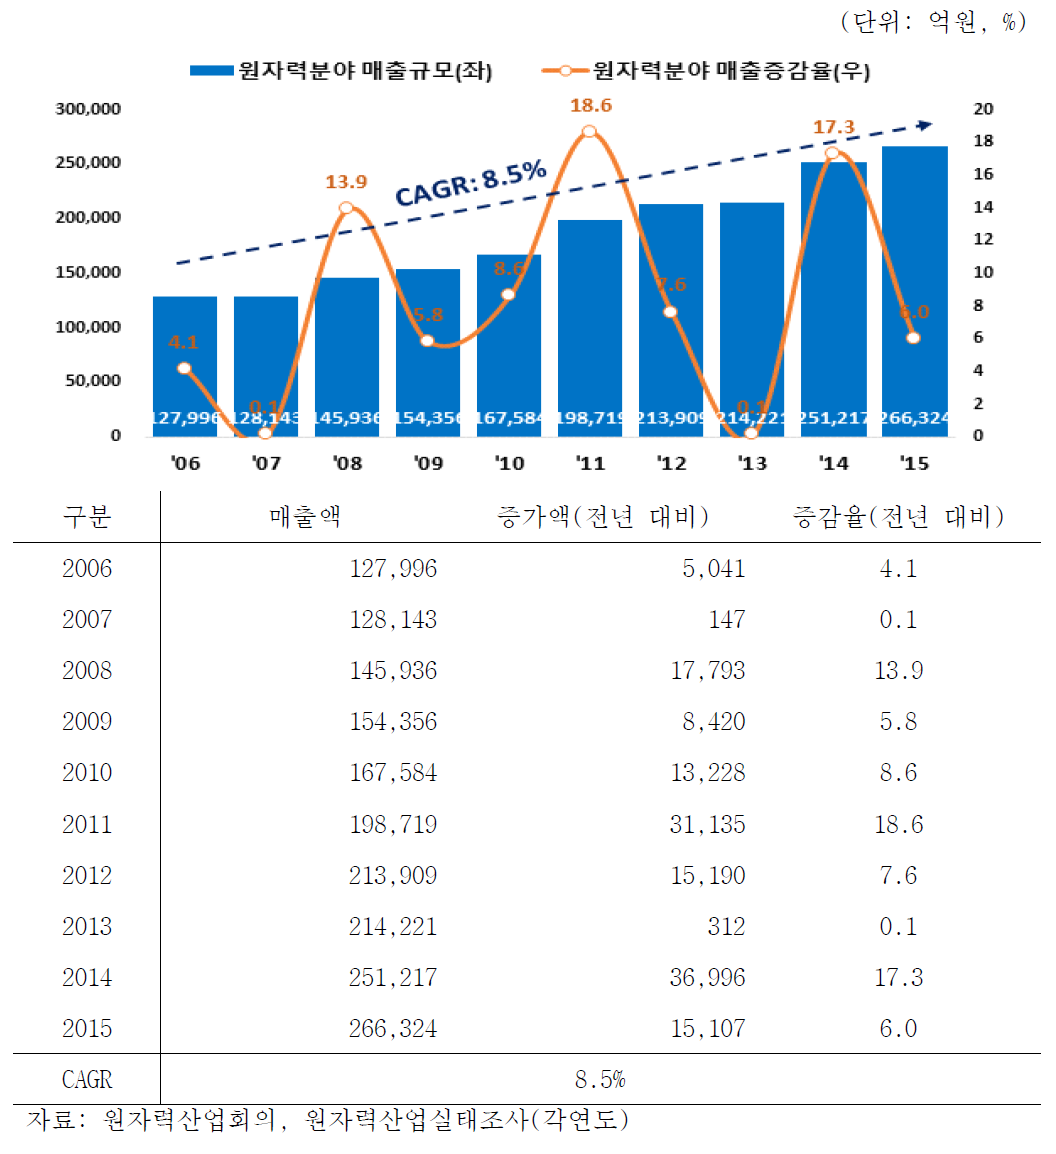 원자력분야 매출액 변화 추이(2006-2015)